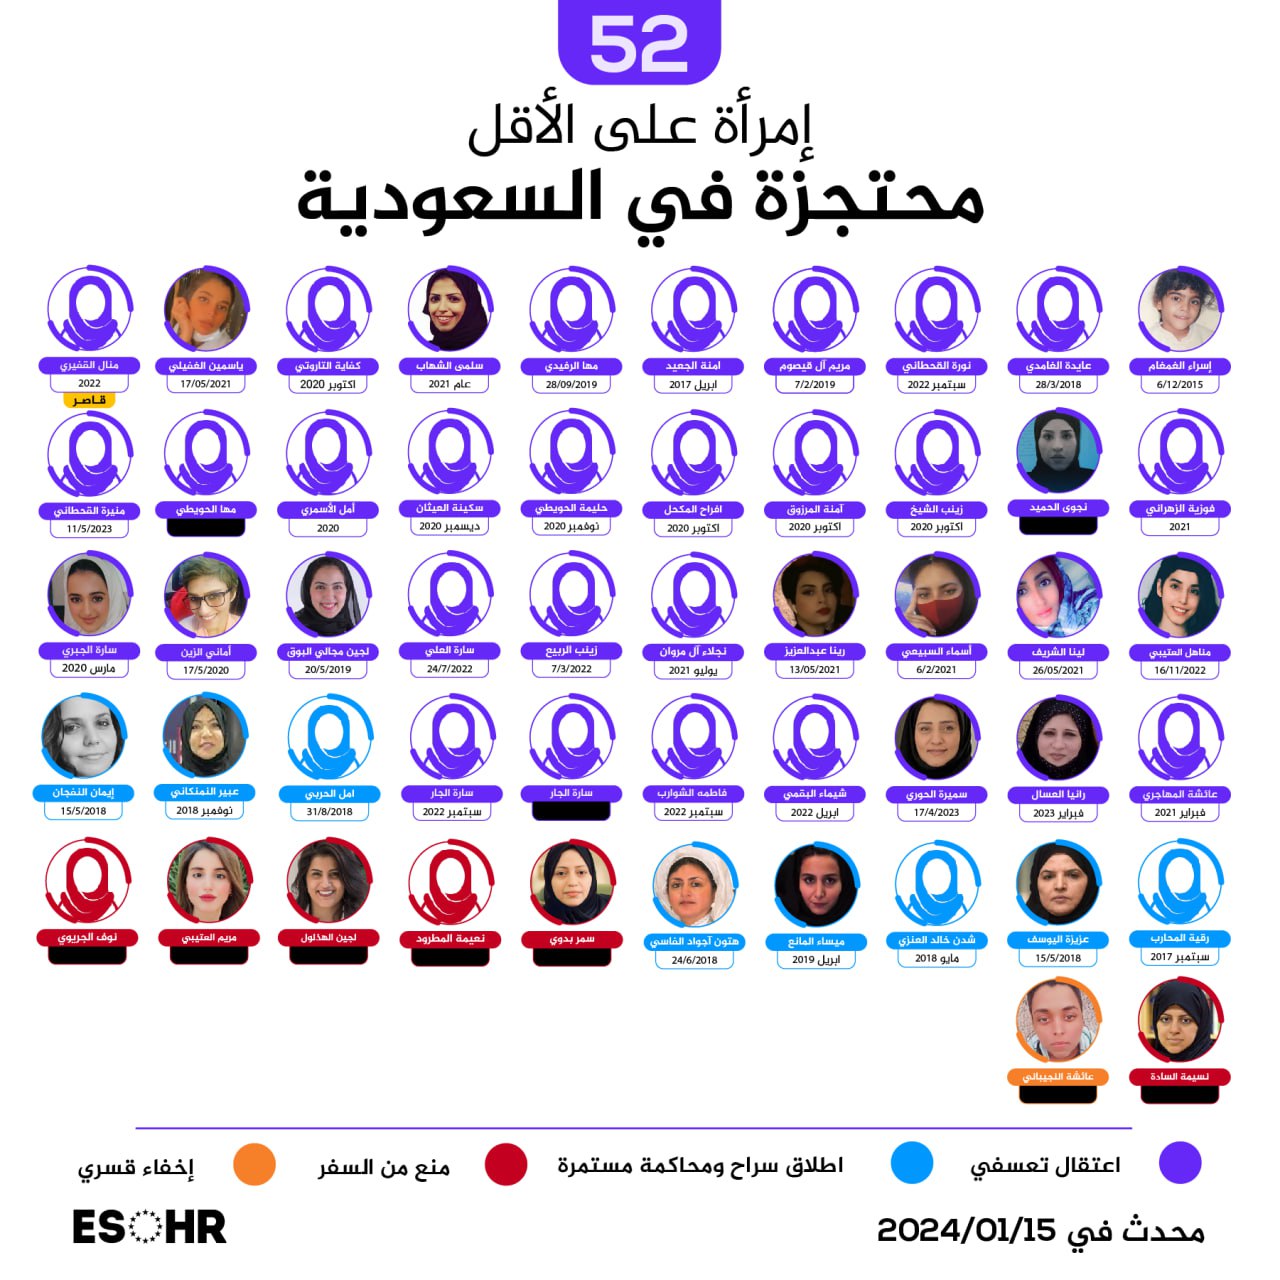 52 امرأة في سجون السعودية